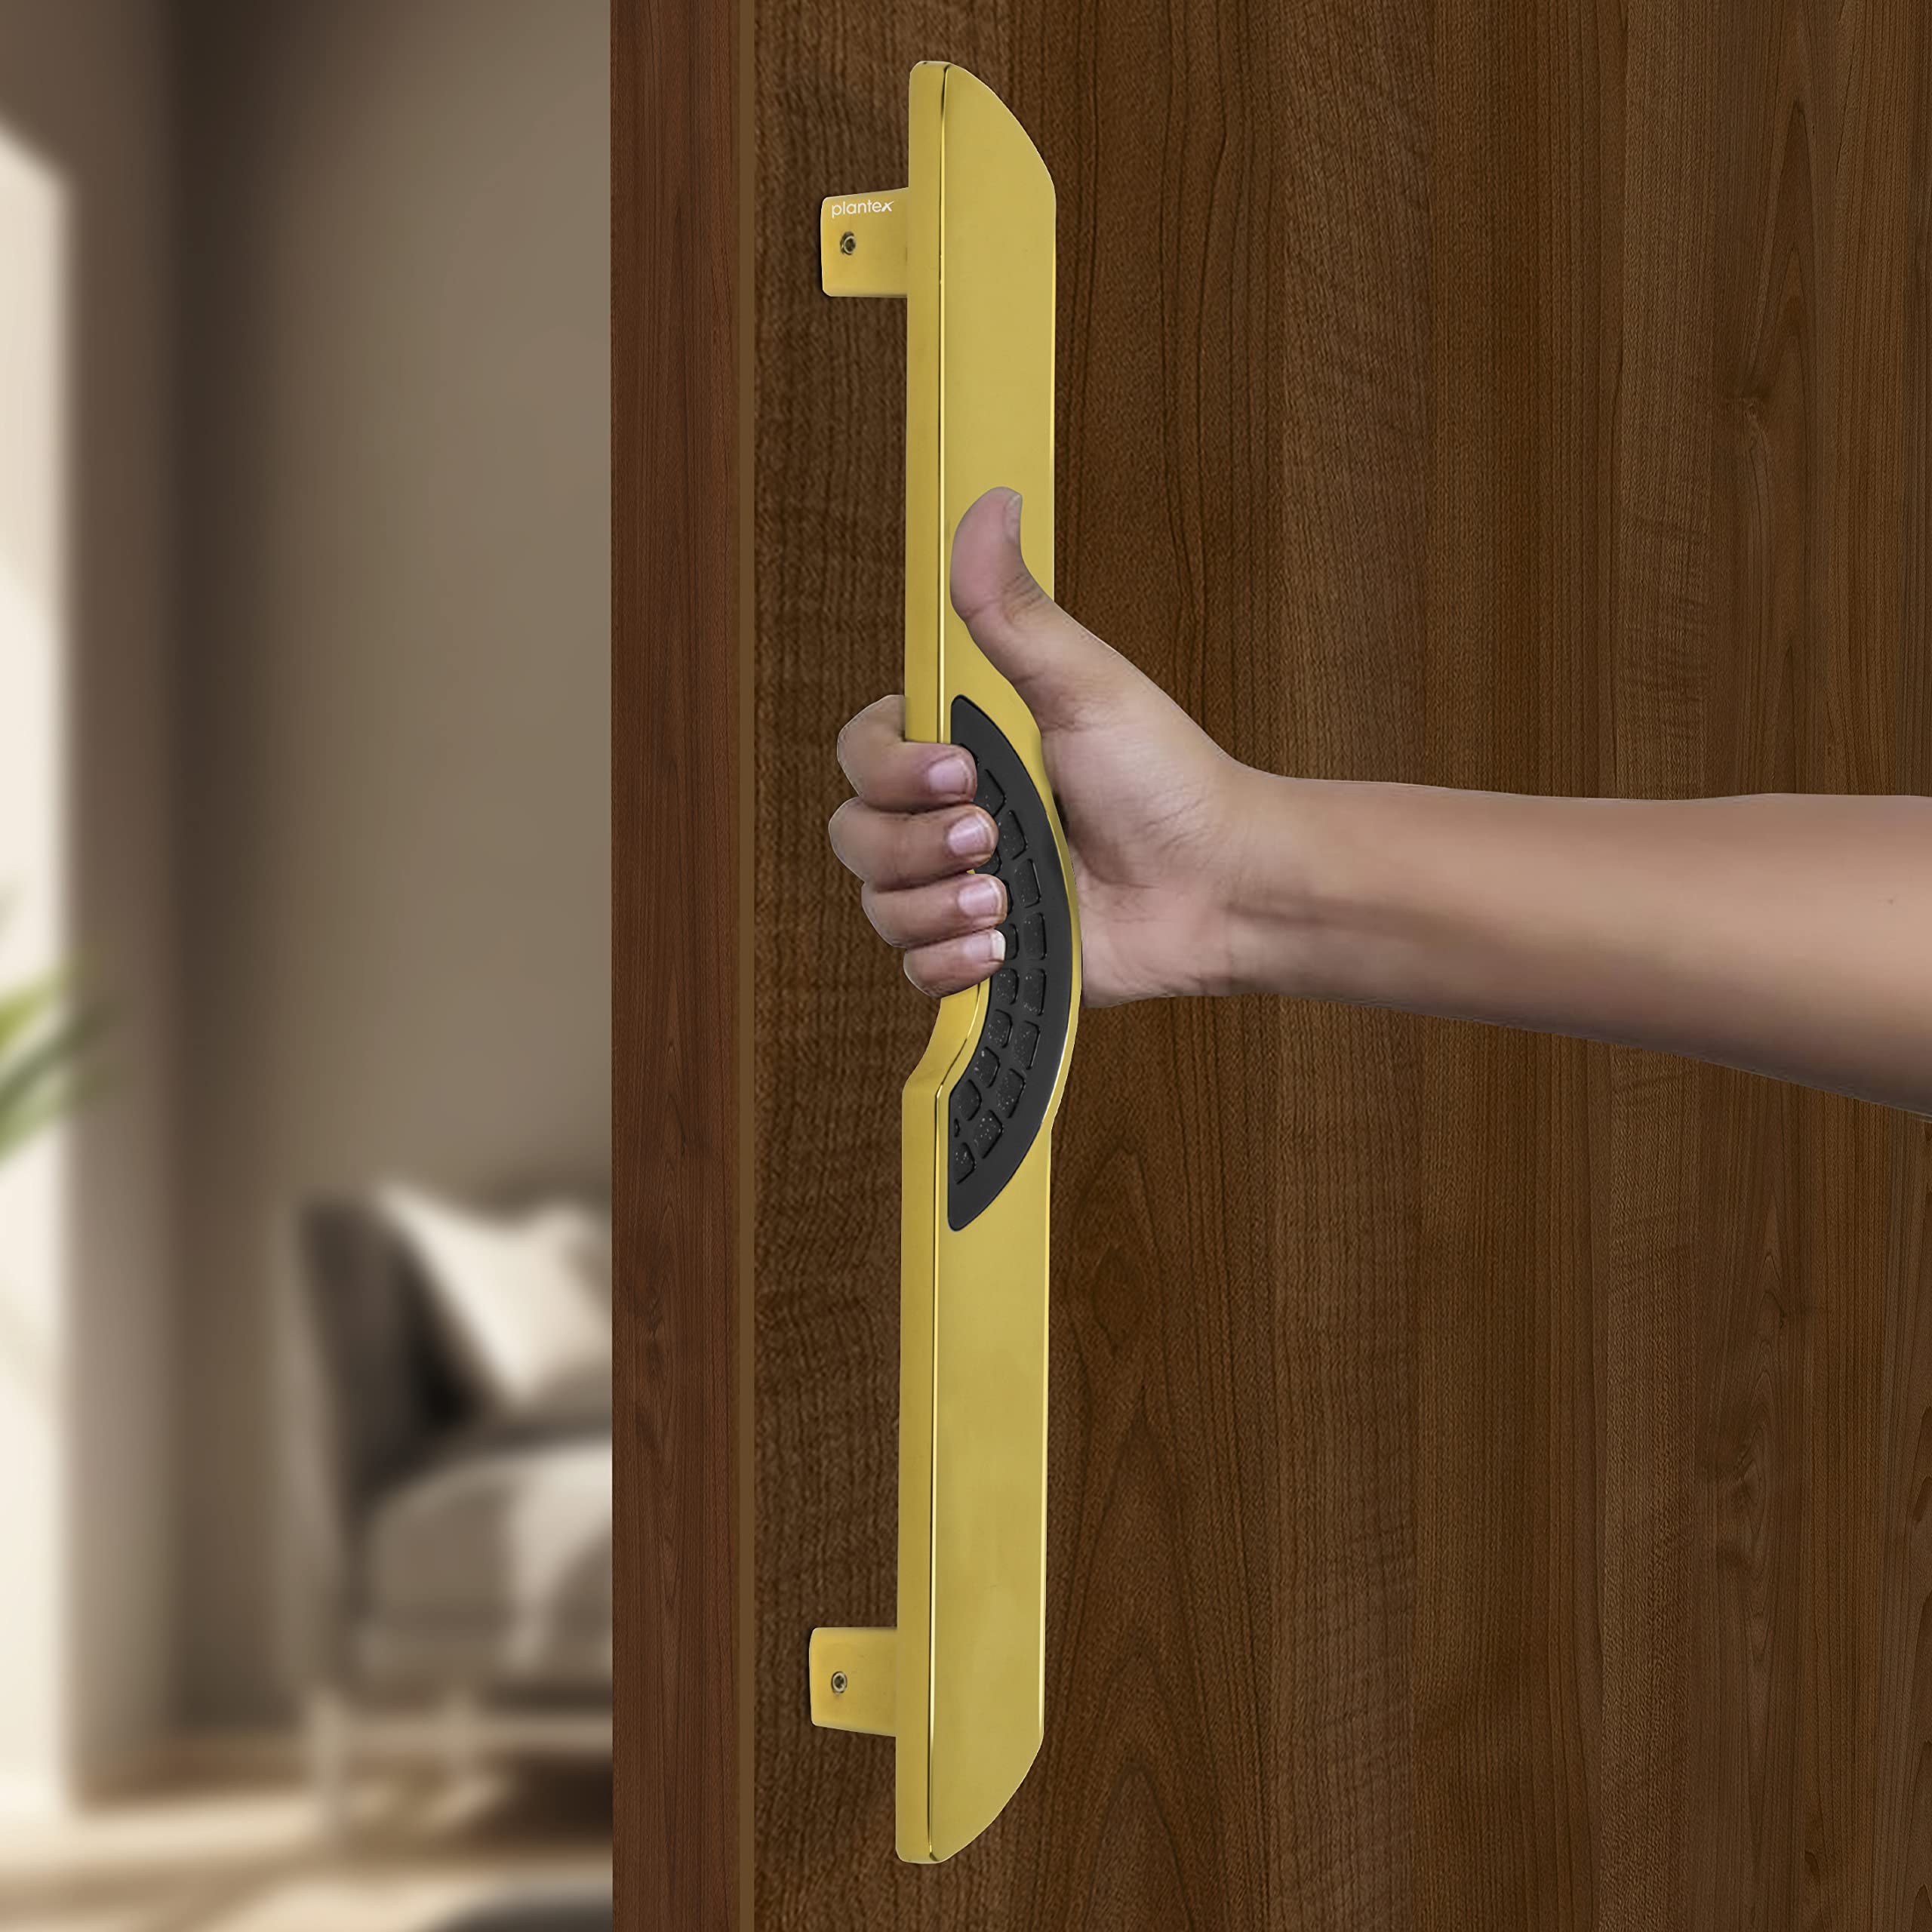 Plantex Ultron Door Handle/Door & Home Decor/15 Inch Main Door Handle/Door Pull Push Handle – Pack of 1 (316,Gold and Black Finish)